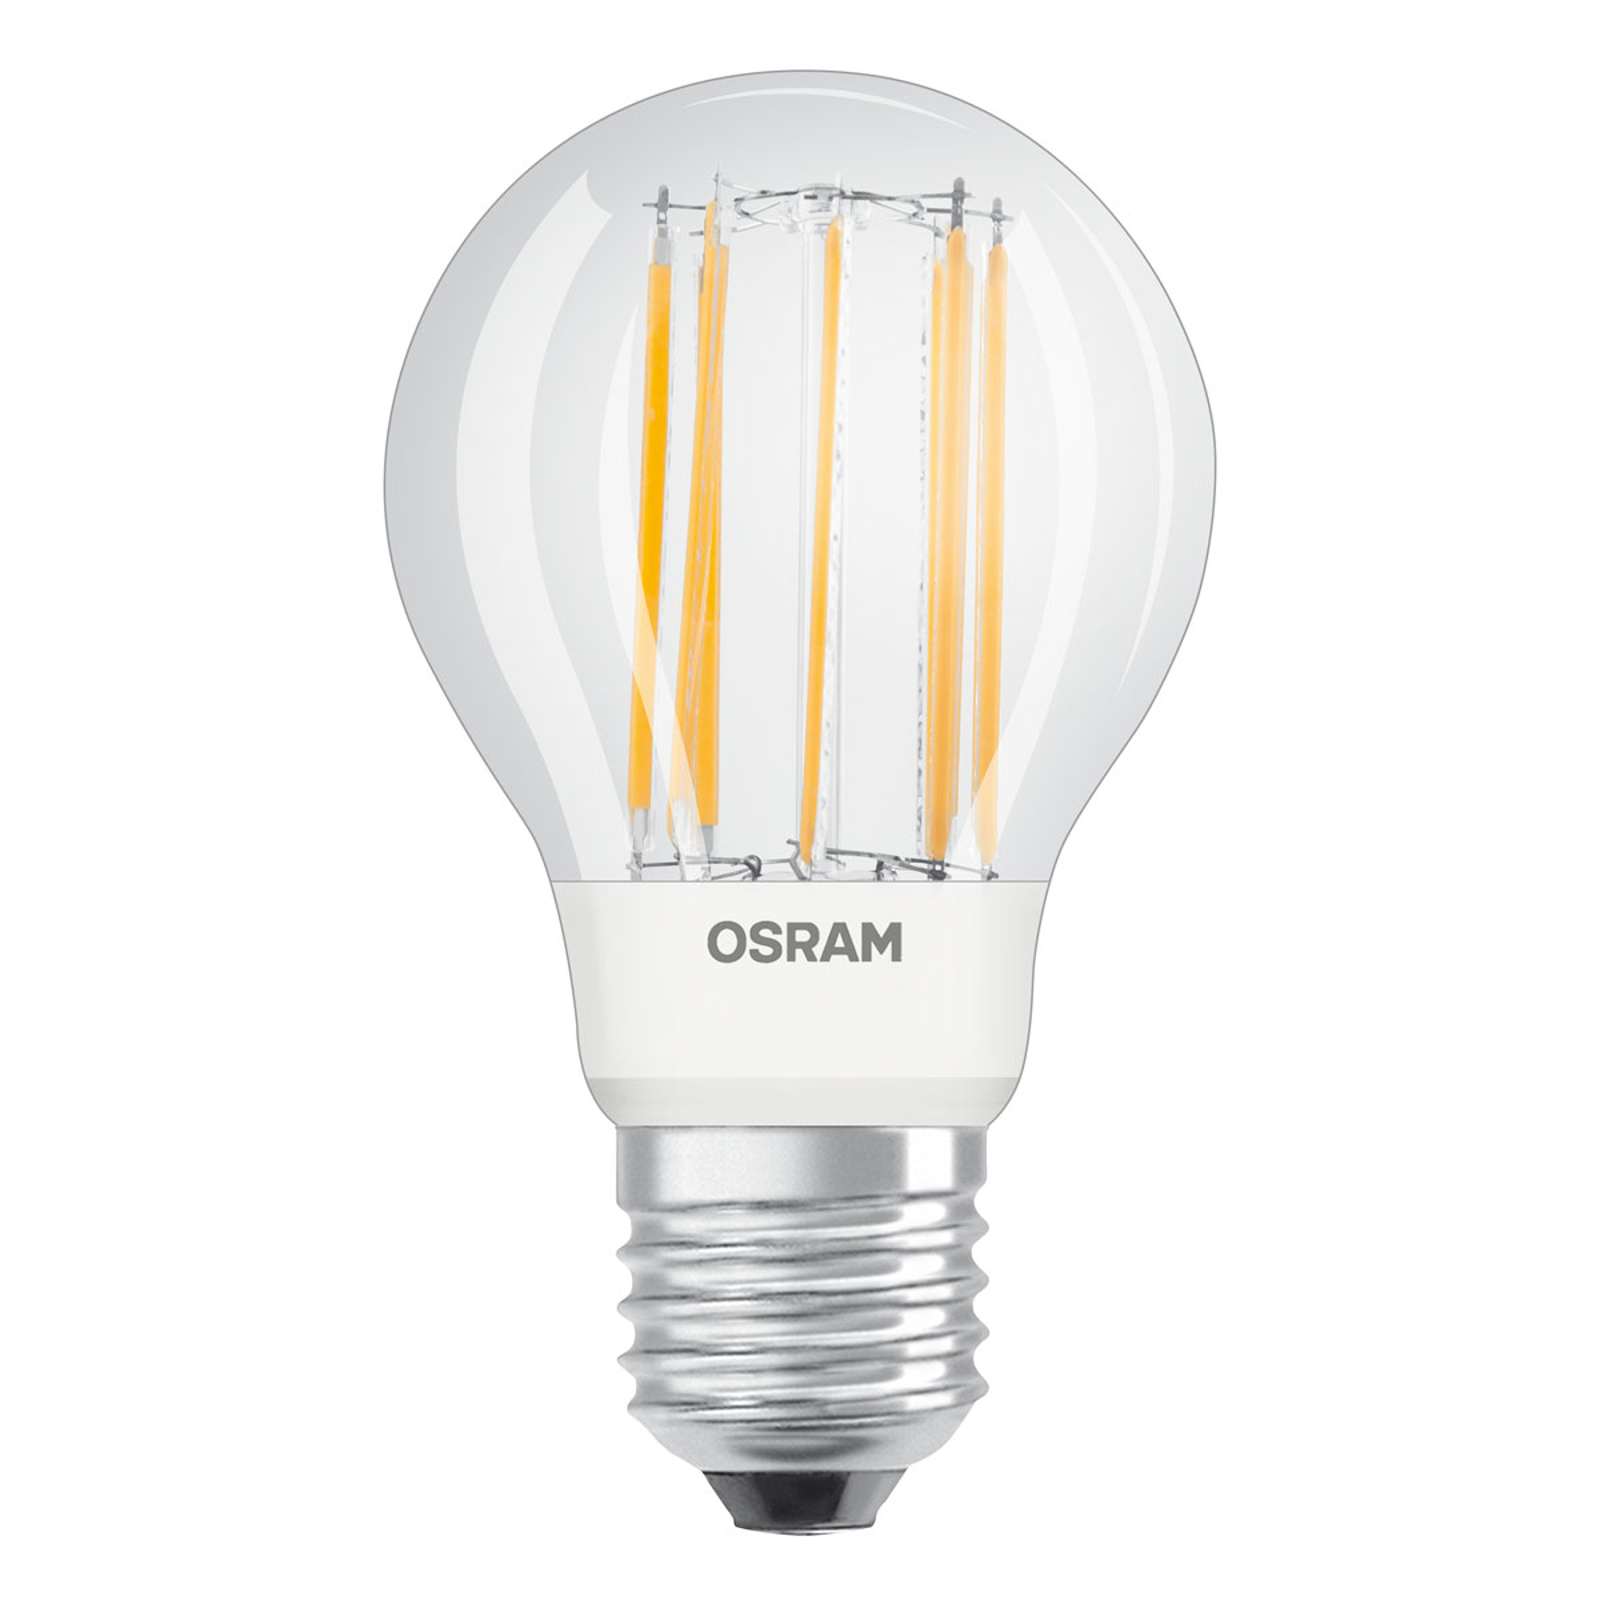 OSRAM-LED-lamppu Classic Filament 12W kirkas 2700K